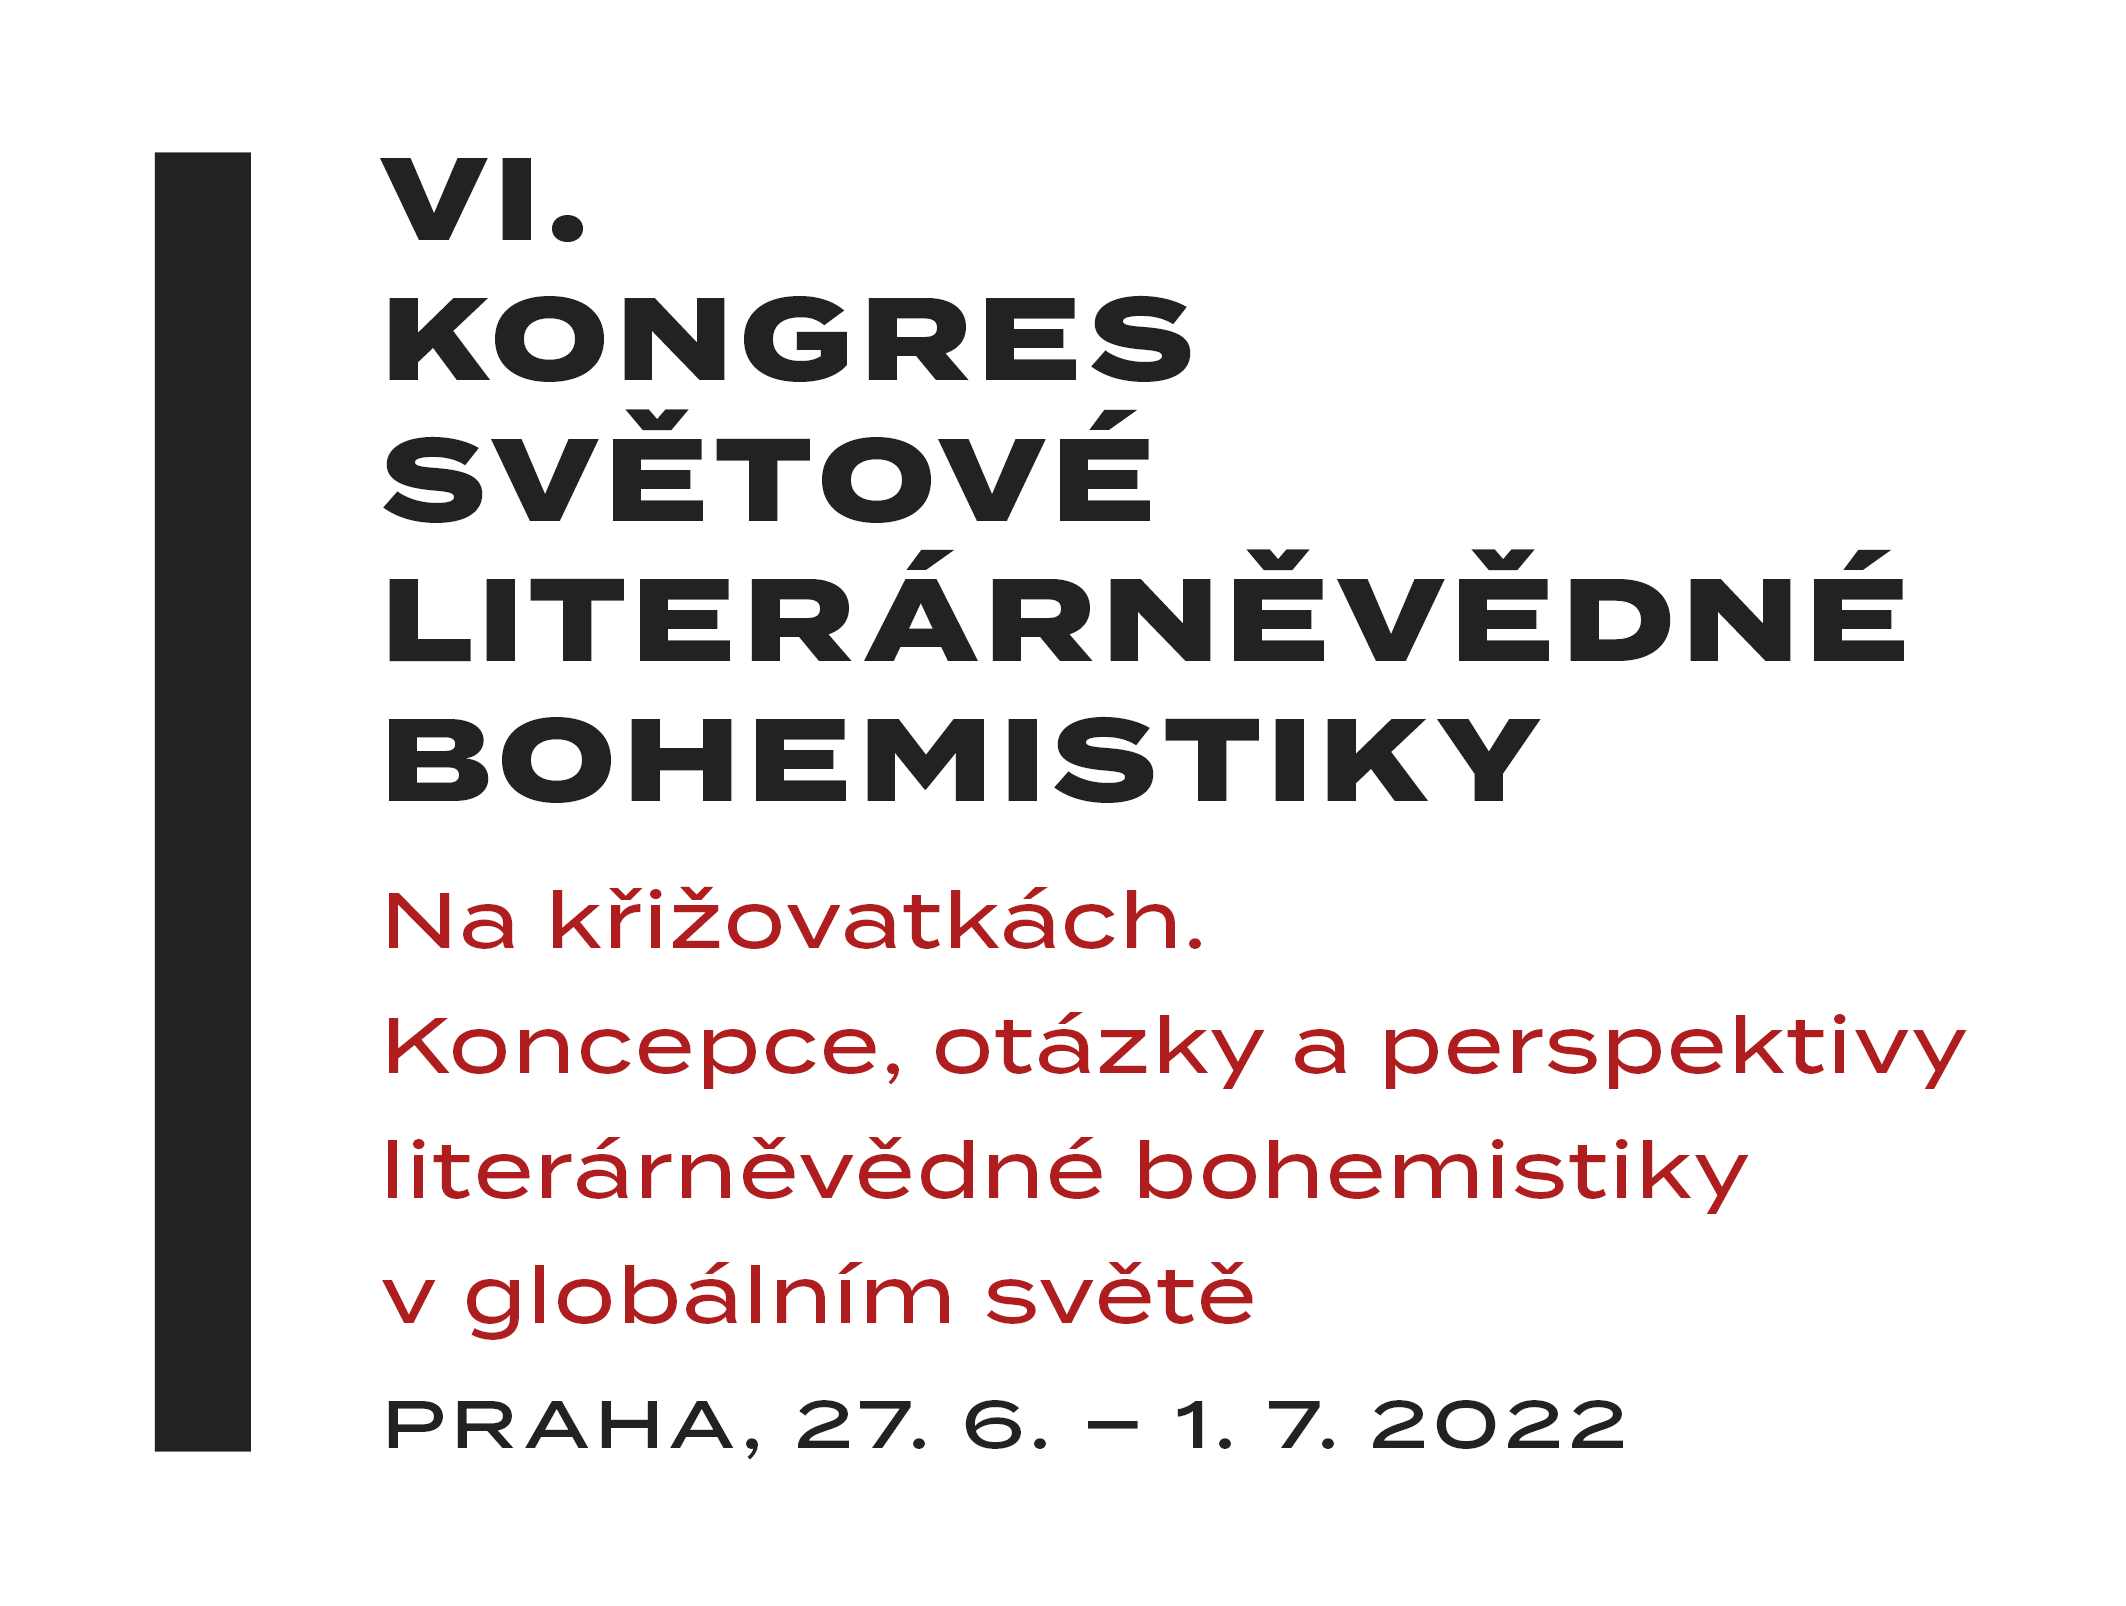 VI. kongres světové literárněvědné bohemistiky